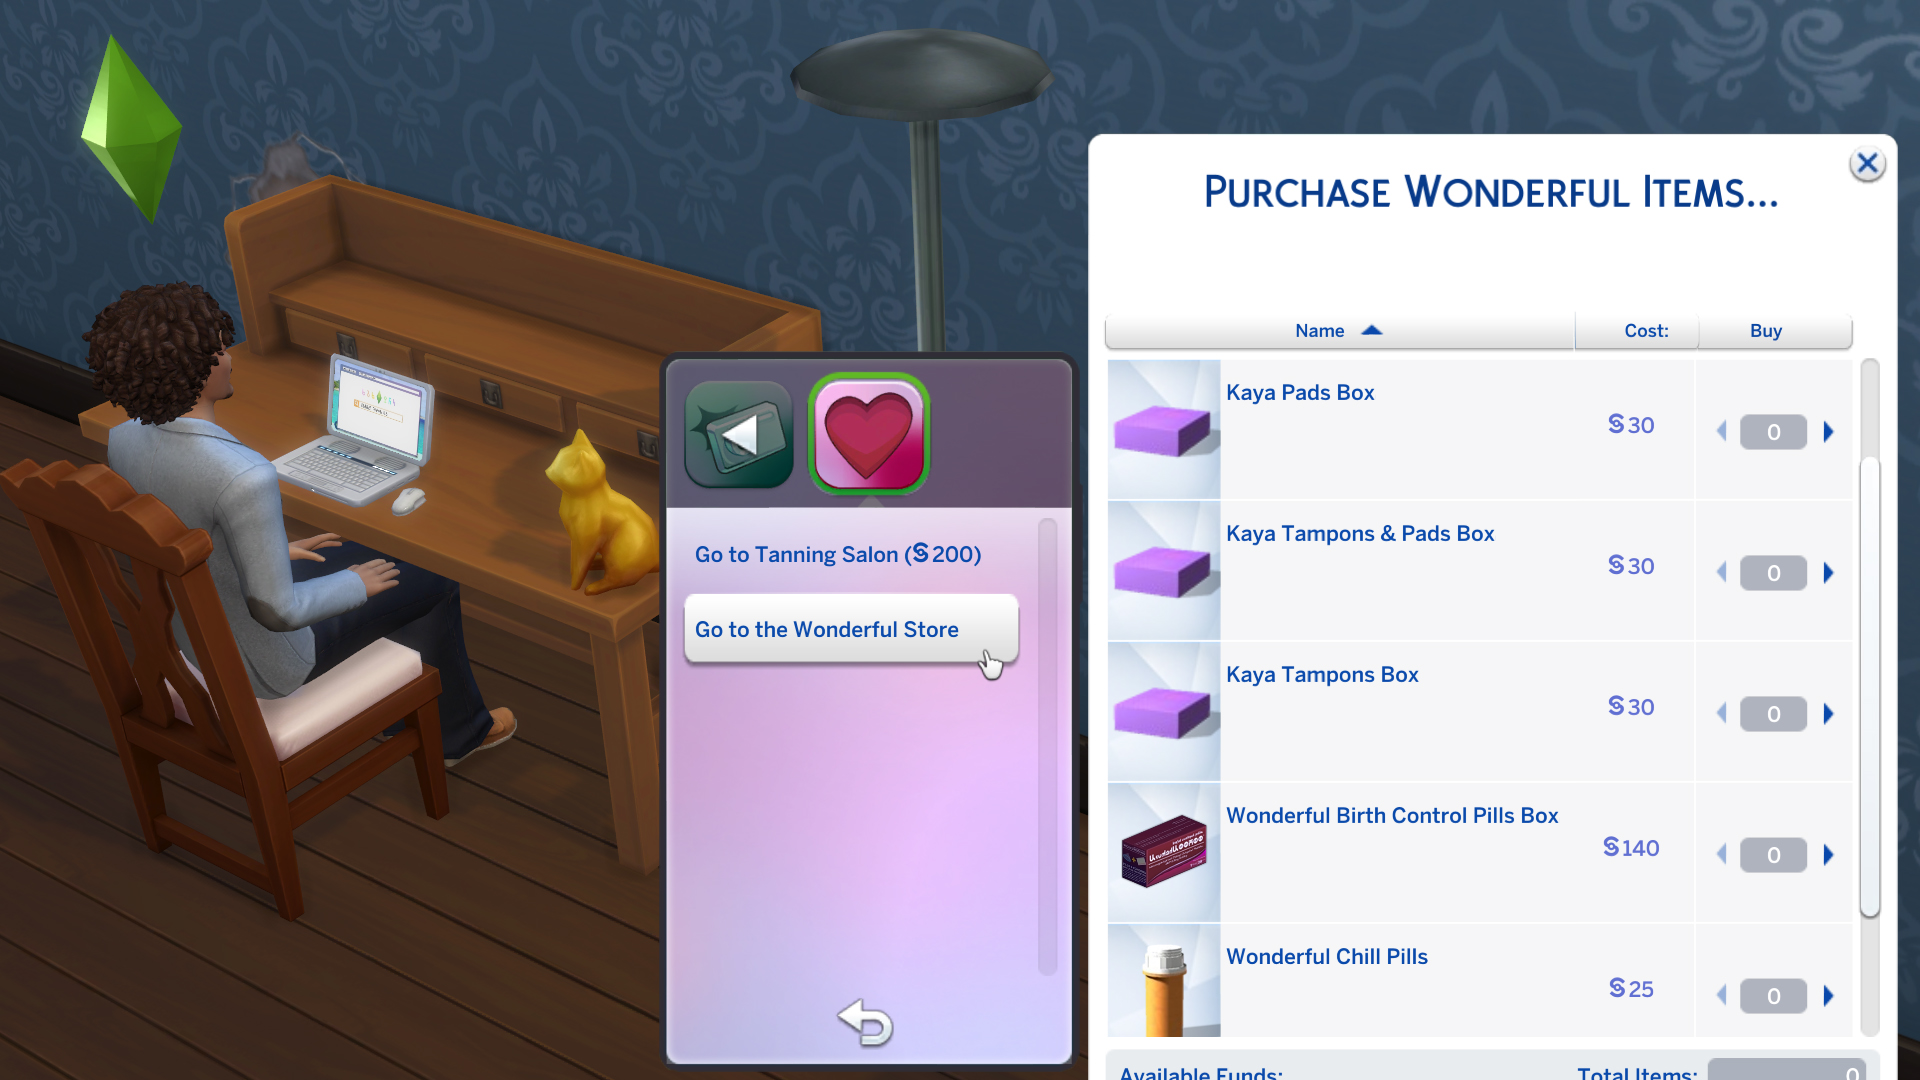 The Sims 4: Adicione mais realismo em seu jogo com o mod WonderfulWhims -  Alala Sims